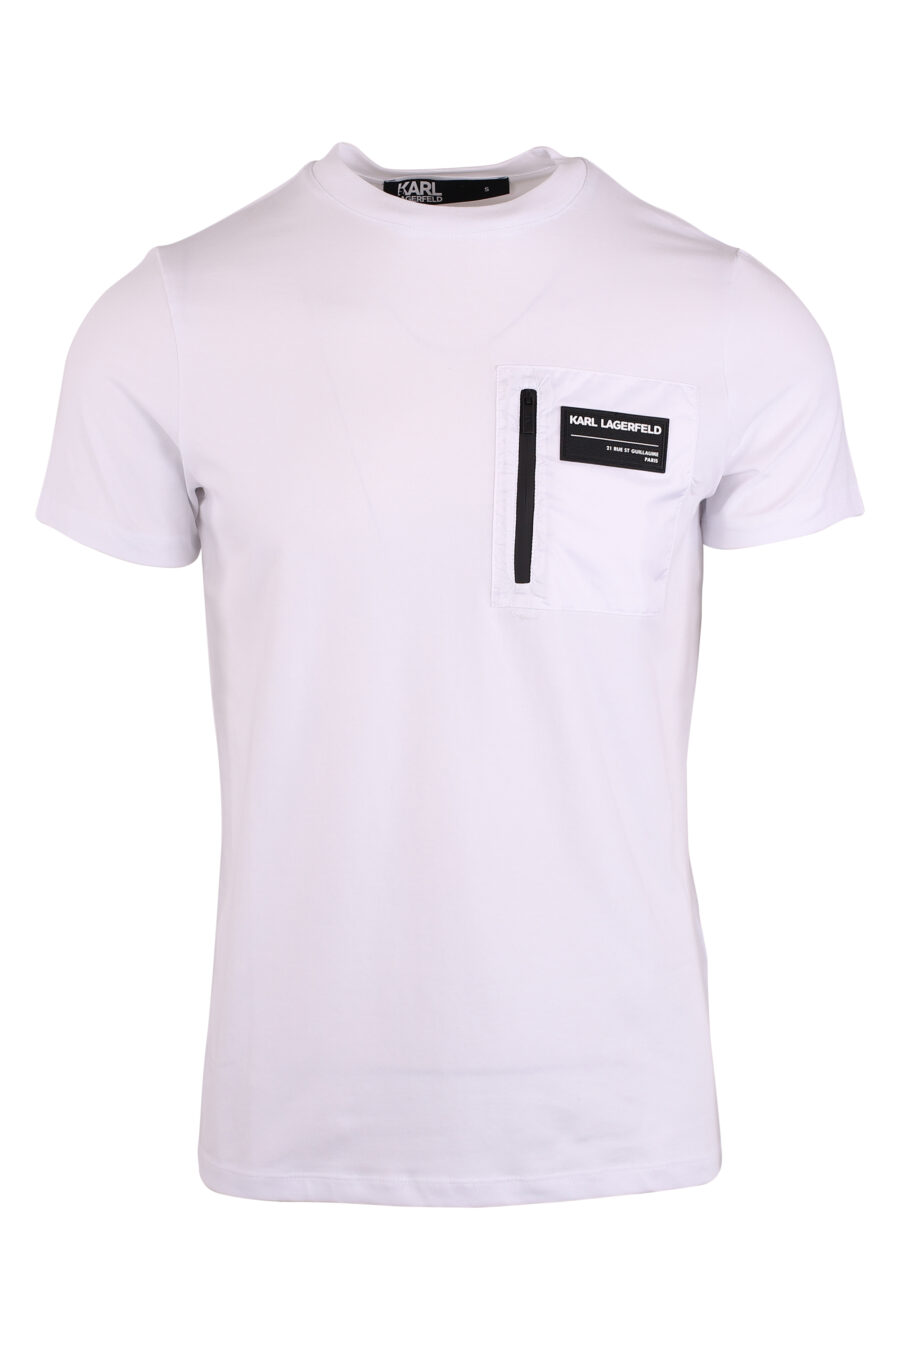 Weißes T-Shirt mit Reißverschlusstasche und weißem Logoaufnäher - IMG 9473